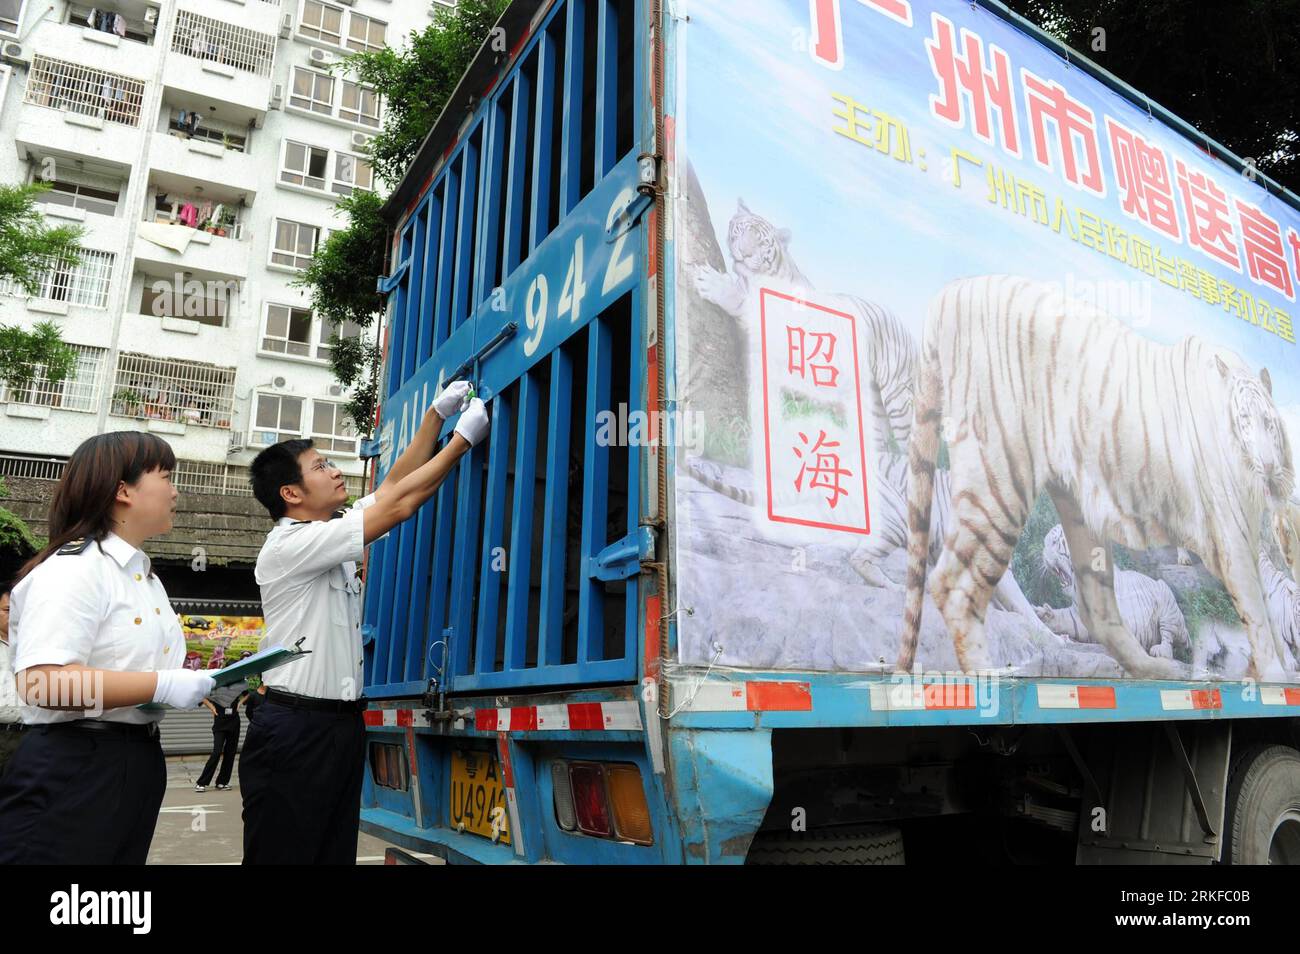 Bildnummer: 55395731 Datum: 25.05.2011 Copyright: Imago/Xinhua (110525) -- GUANGZHOU , 25 de mayo de 2011 (Xinhua) -- Un inspector de cuarentena cierra el carro de la camioneta cargada con los tigres blancos Zhaohai y Huanle en Guangzhou, provincia de Guangdong del sur de China, 25 de mayo de 2011. Dos tigres blancos, ambos de cuatro años de edad, fueron transportados por avión a Kaohsiung en el sureste de China, Taiwán el miércoles. Los raros tigres fueron donados por el gobierno de Guangzhou. (Xinhua/Liu Dawei) (ljh) CHINA-GUANGZHOU-KAOHSIUNG -RARE TIGERS (CN) PUBLICATIONxNOTxINxCHN Transporte de TIERROS de tigre Kbdig xub 2011 quer Foto de stock